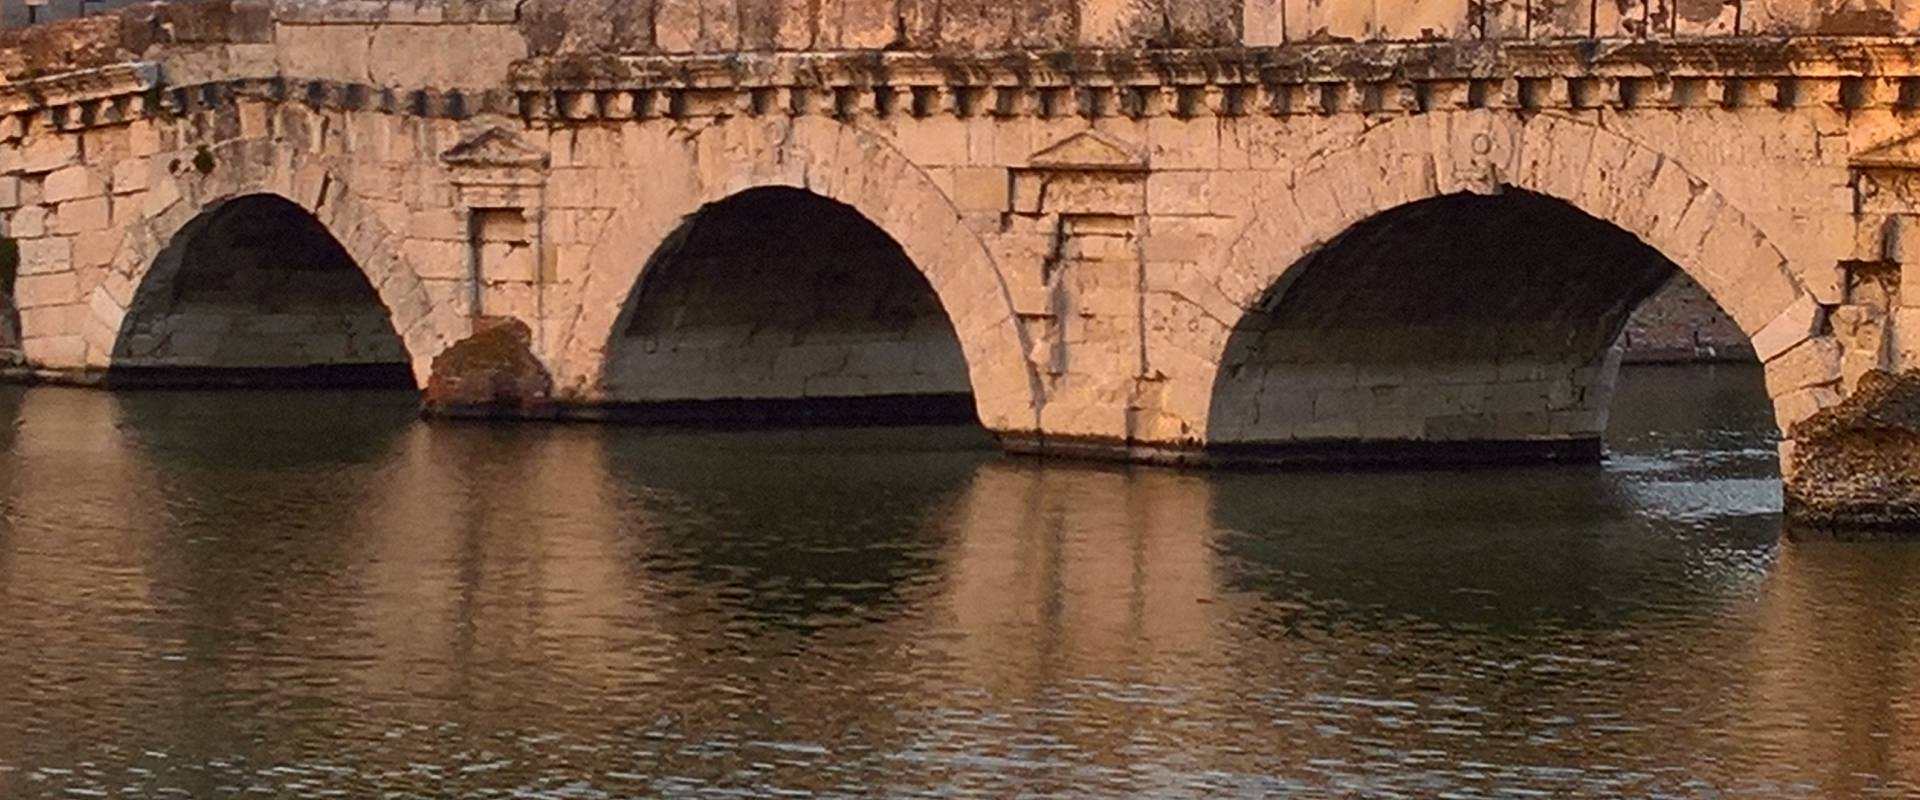 Particolare del Ponte di Tiberio, Rimini photo by Supermabi